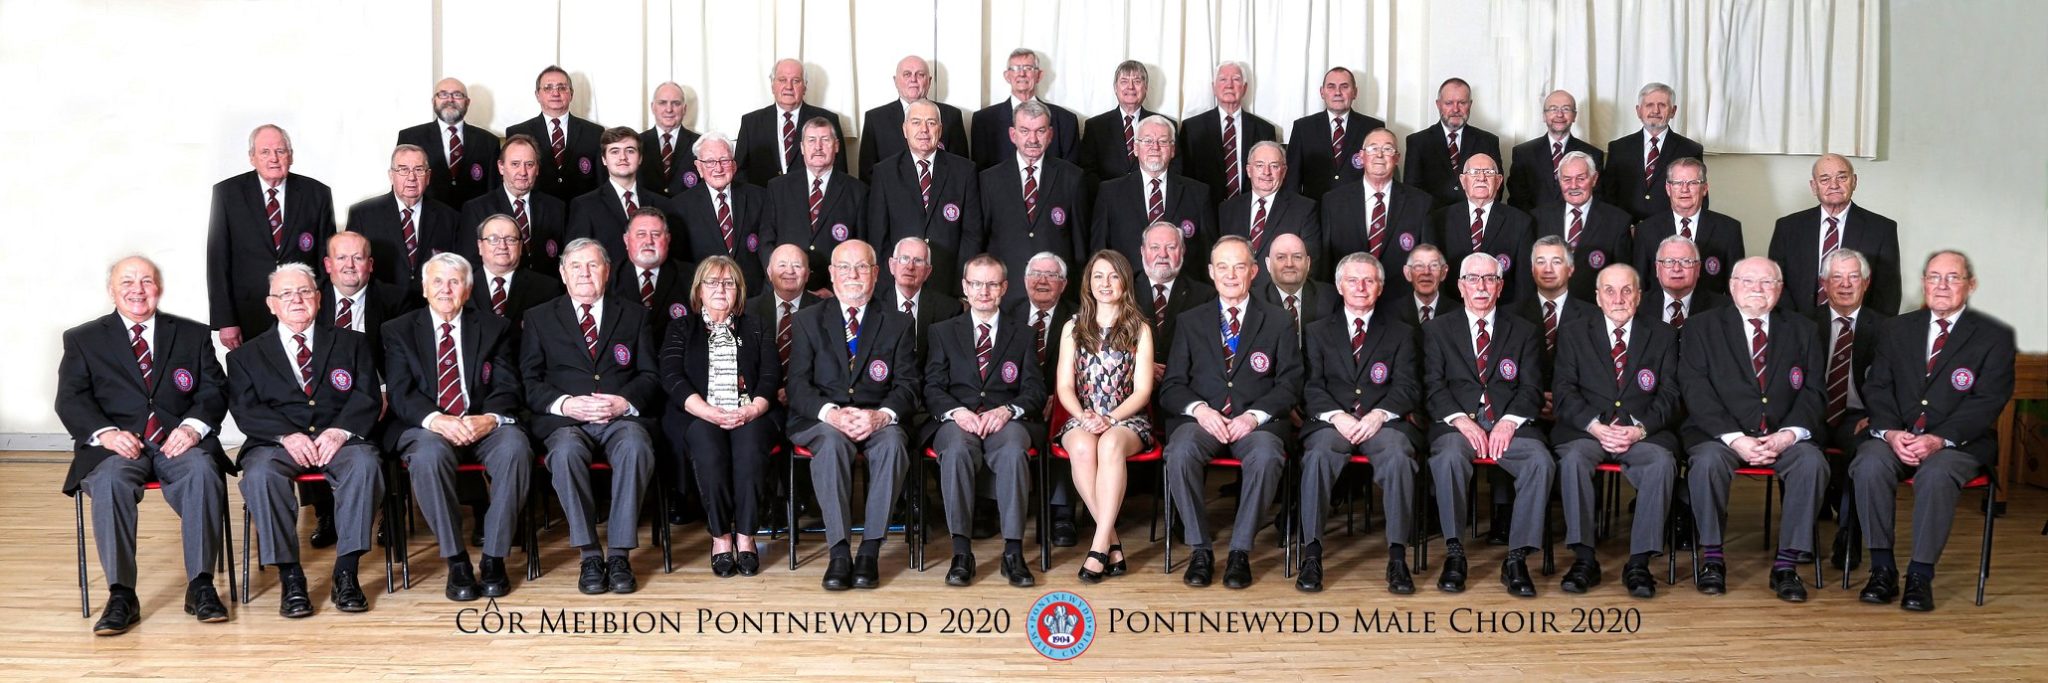 Pontnewydd Male Voice Choir.